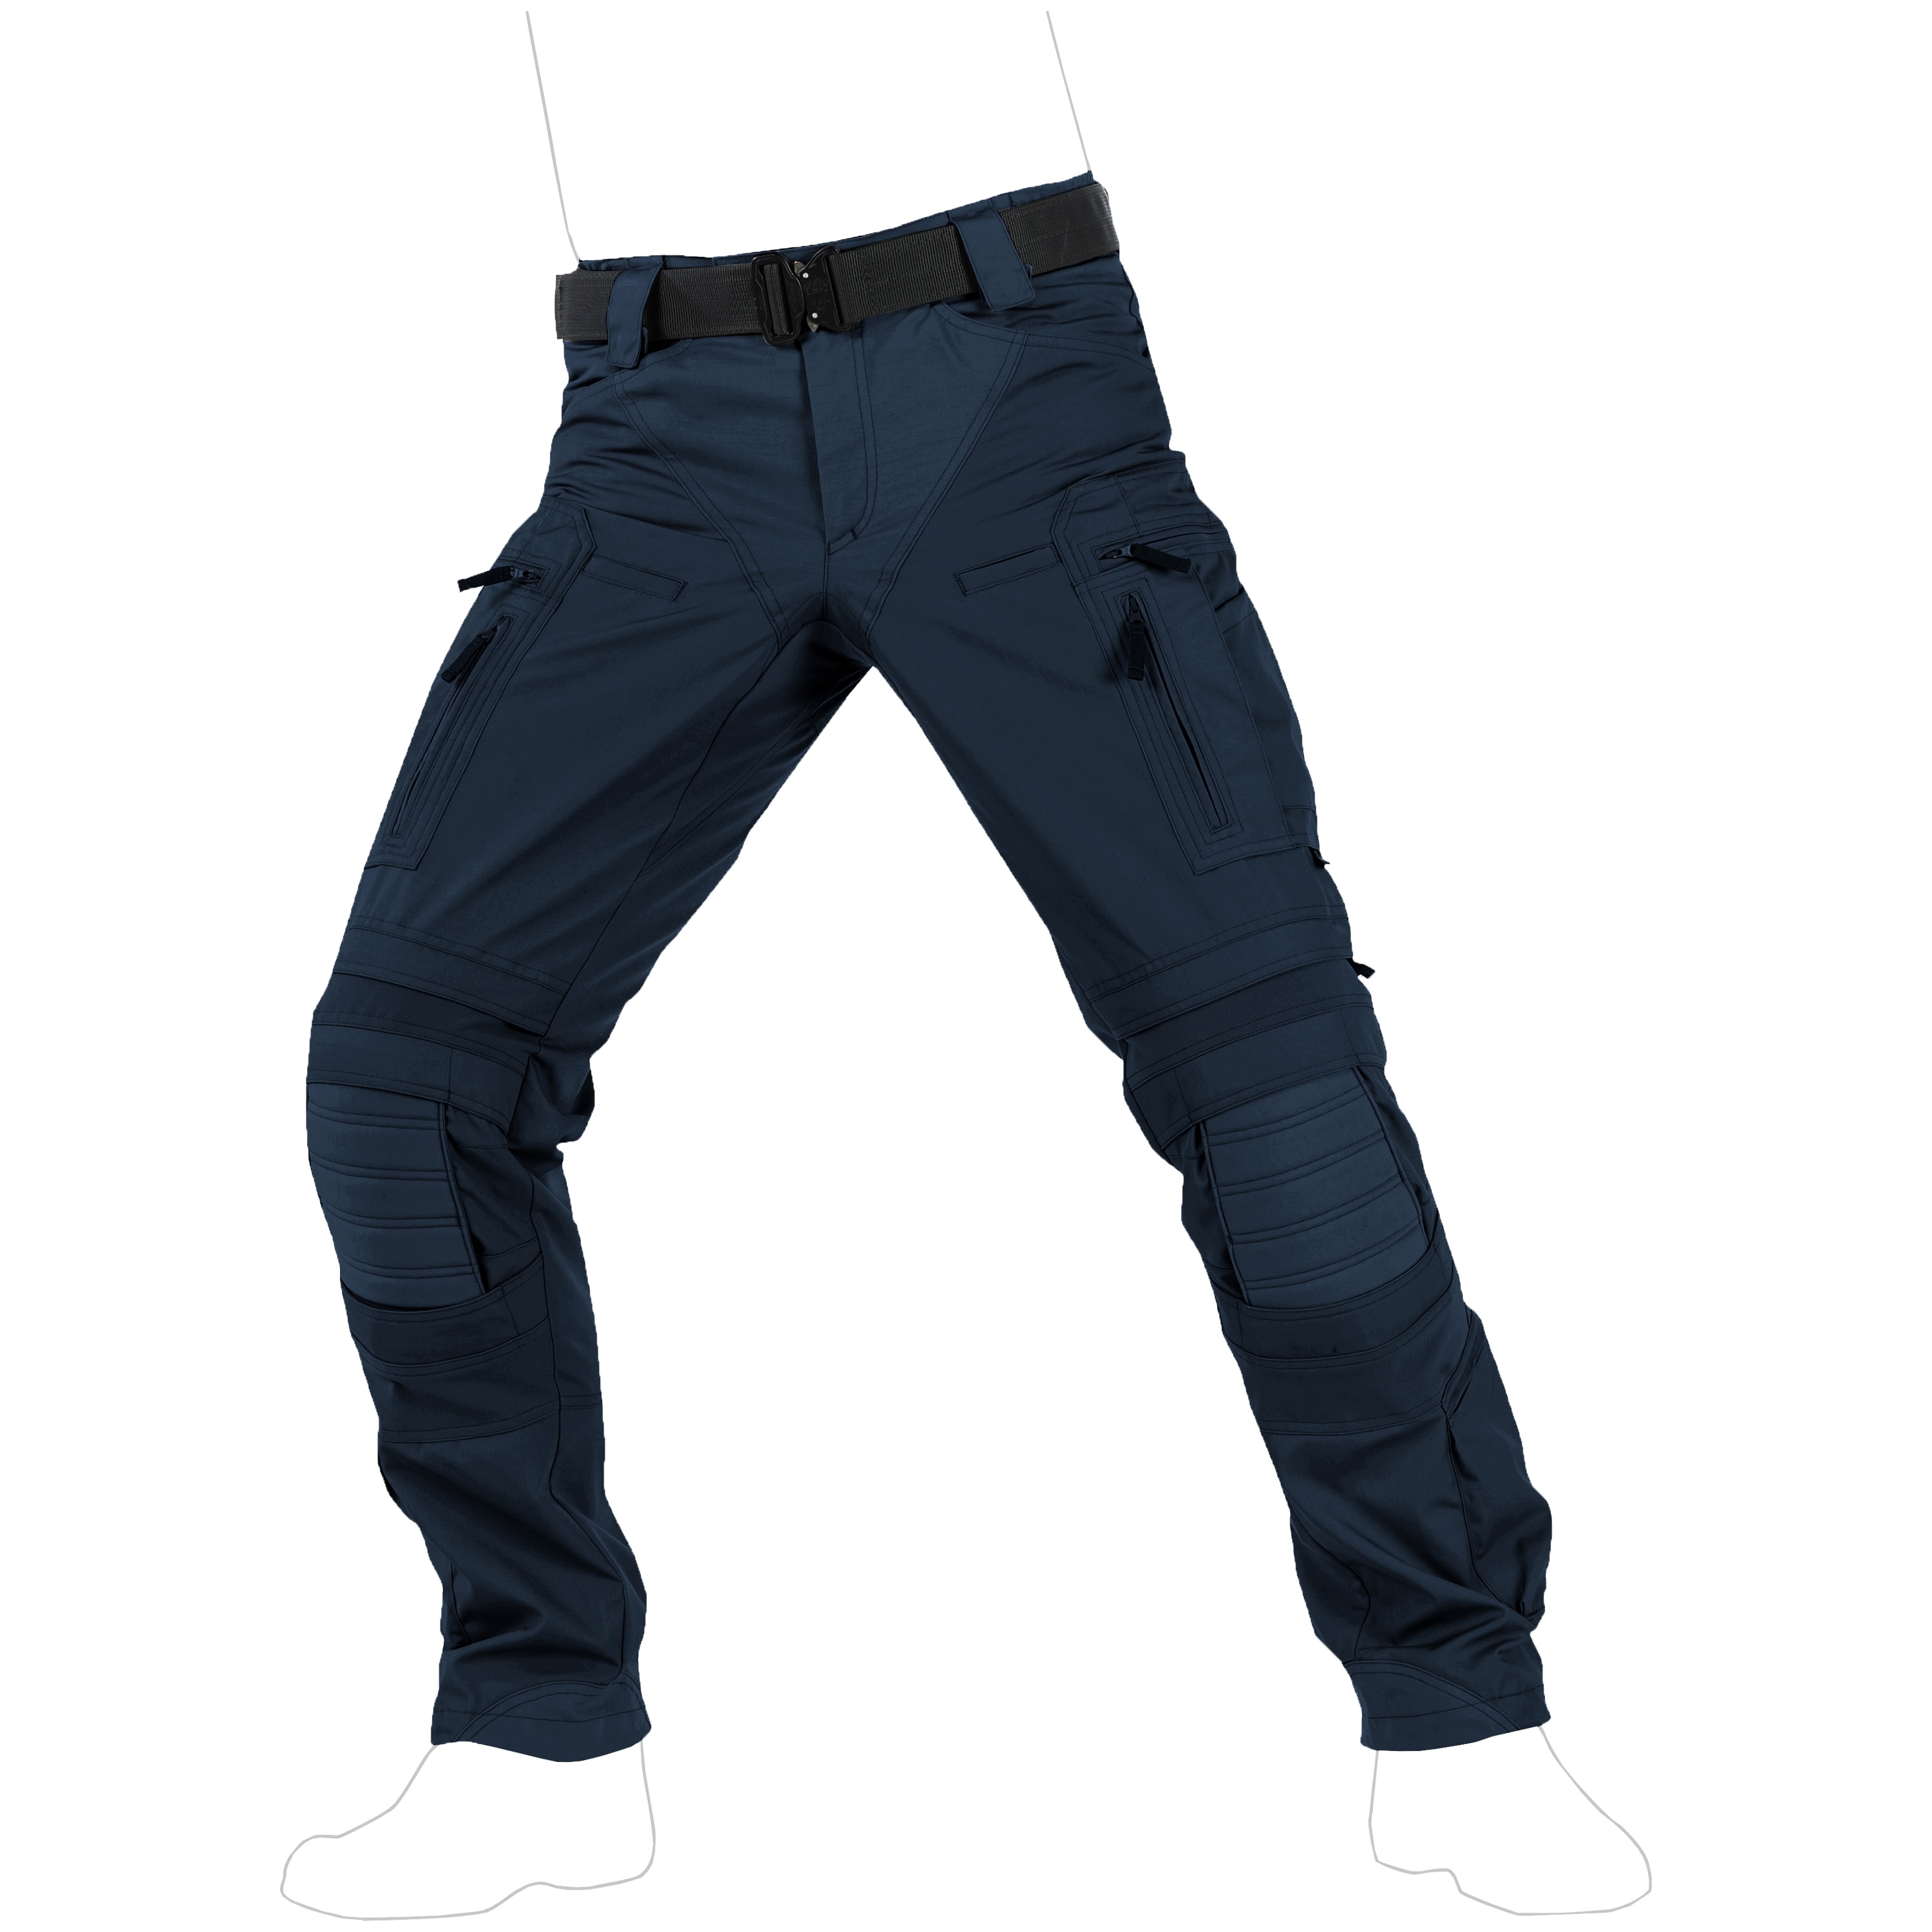 navy blue combat pants